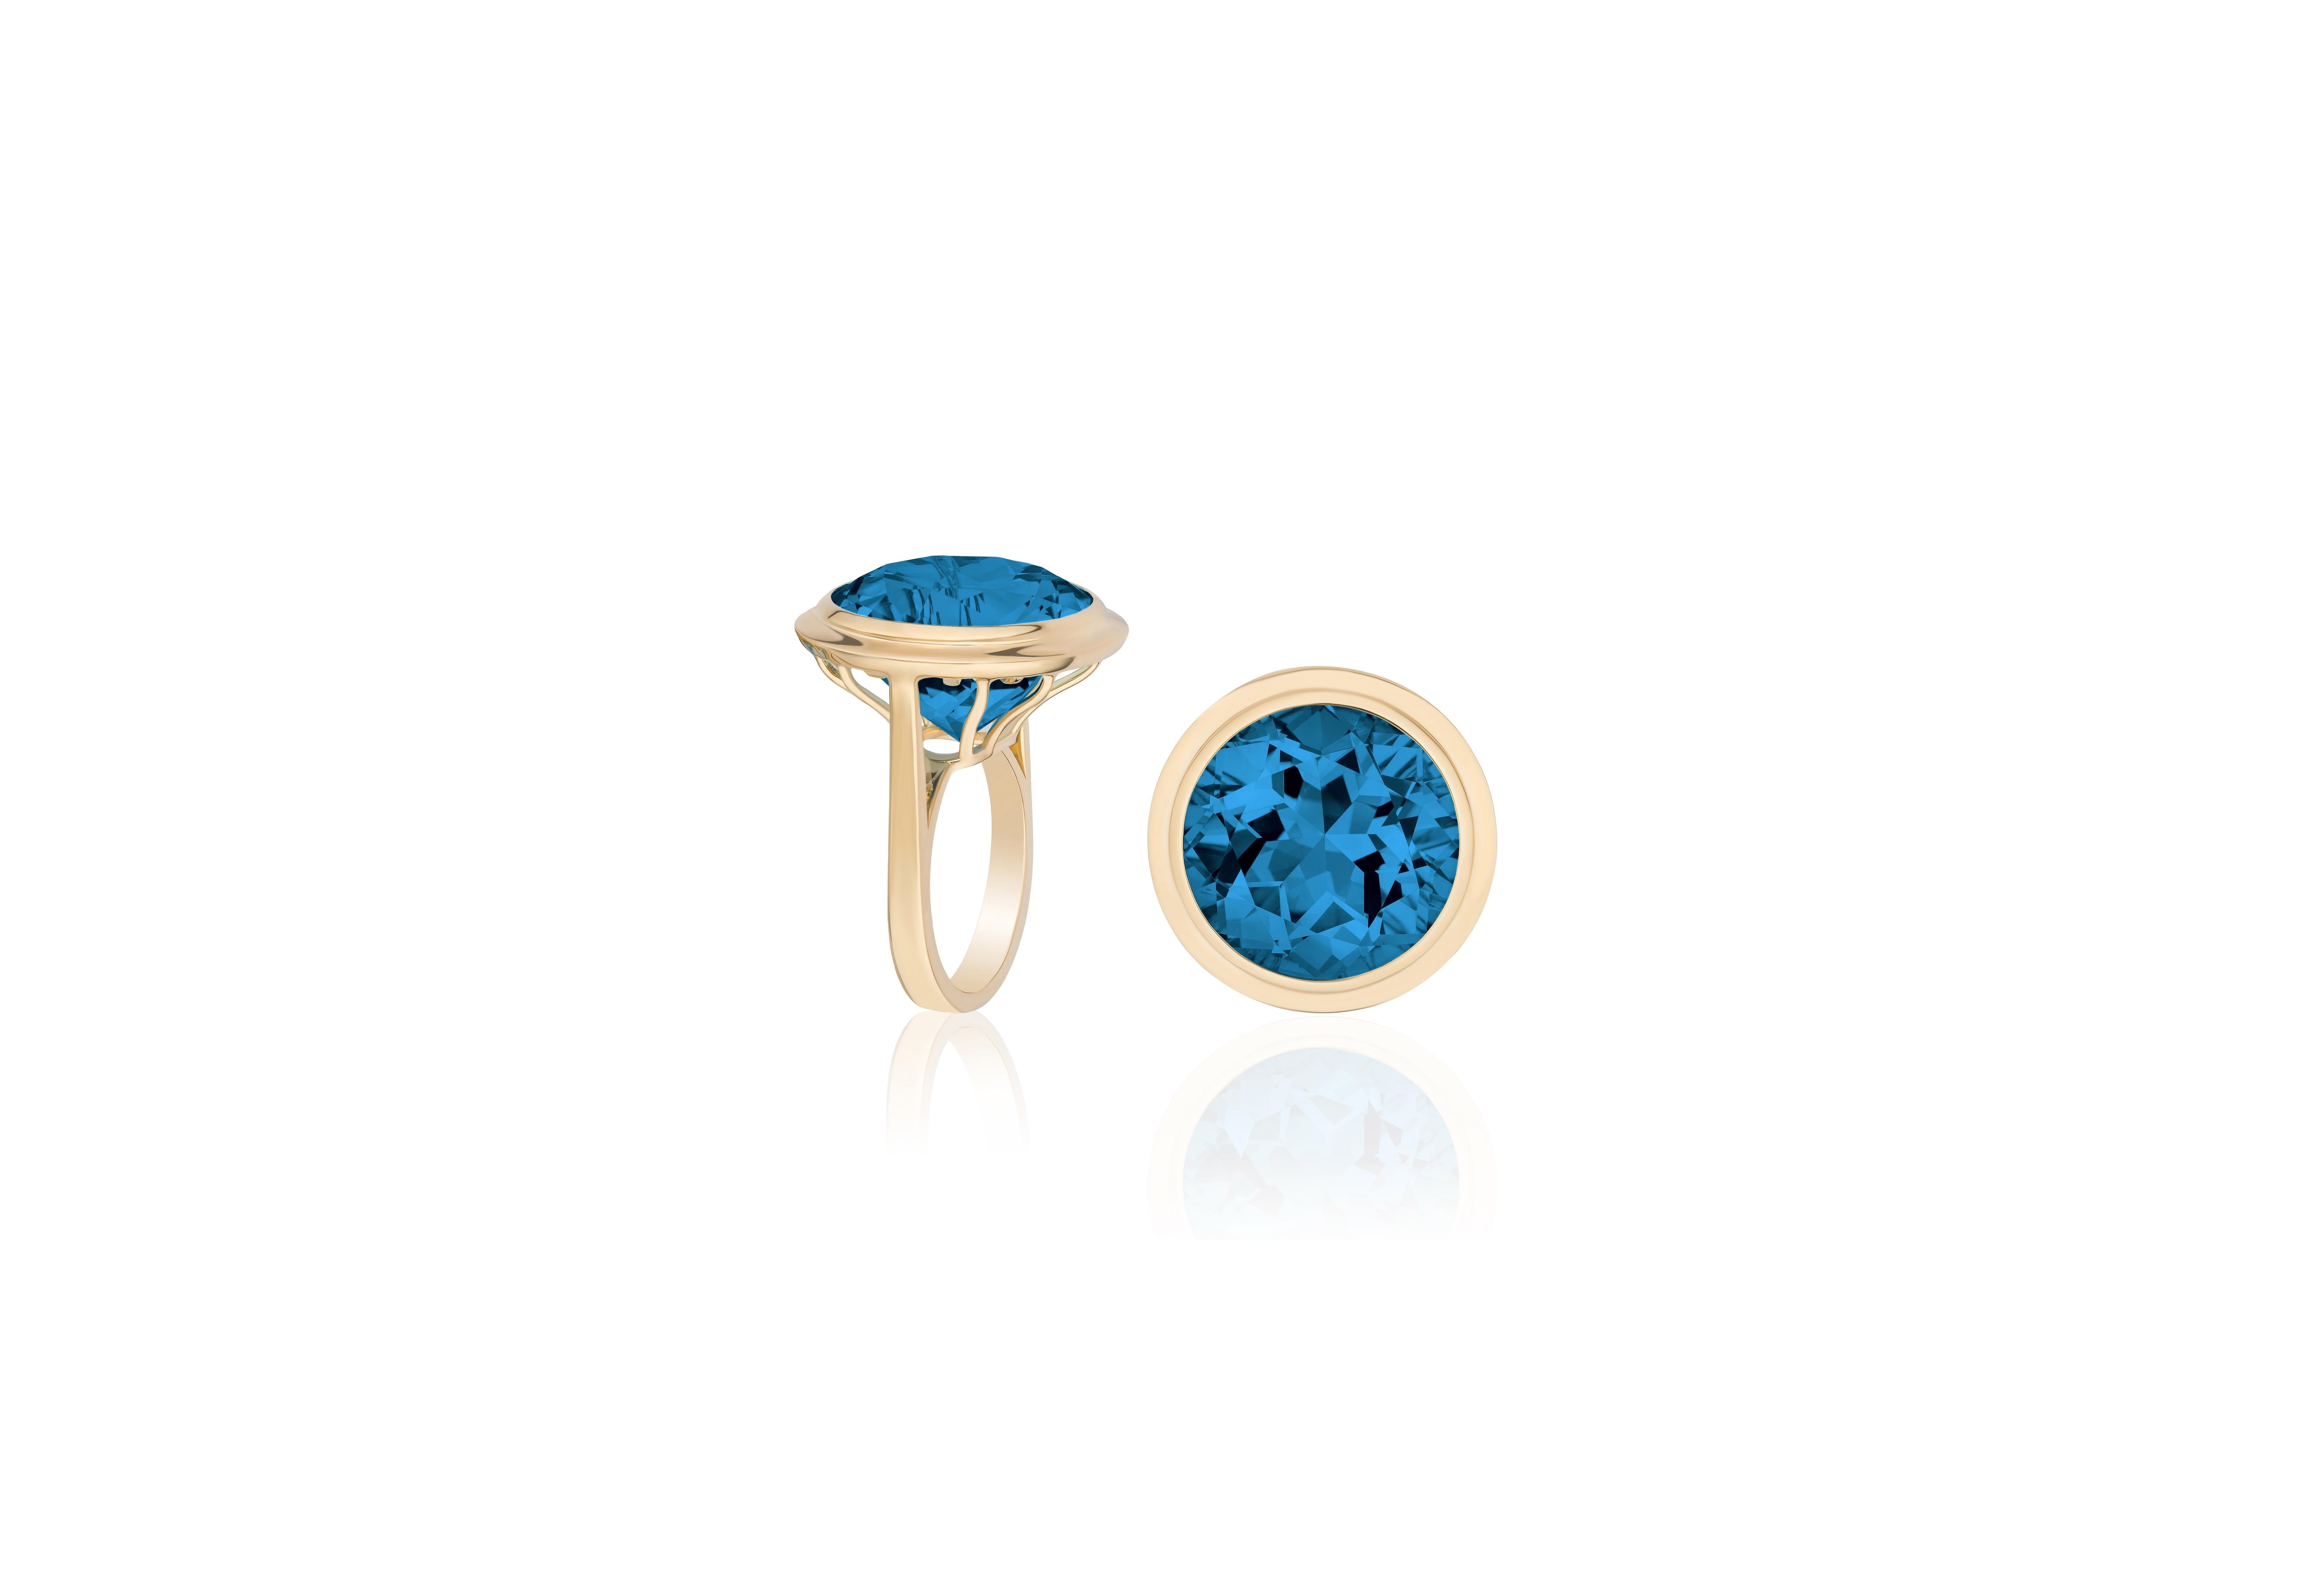 Exquisiter facettierter runder Londoner Blautopas-Ring aus der 'G-One' Collection'S von Goshwara. Dieser fesselnde Ring aus luxuriösem 18-karätigem Gelbgold präsentiert einen faszinierenden Londoner Blautopas mit rundem Facettenschliff, der einen